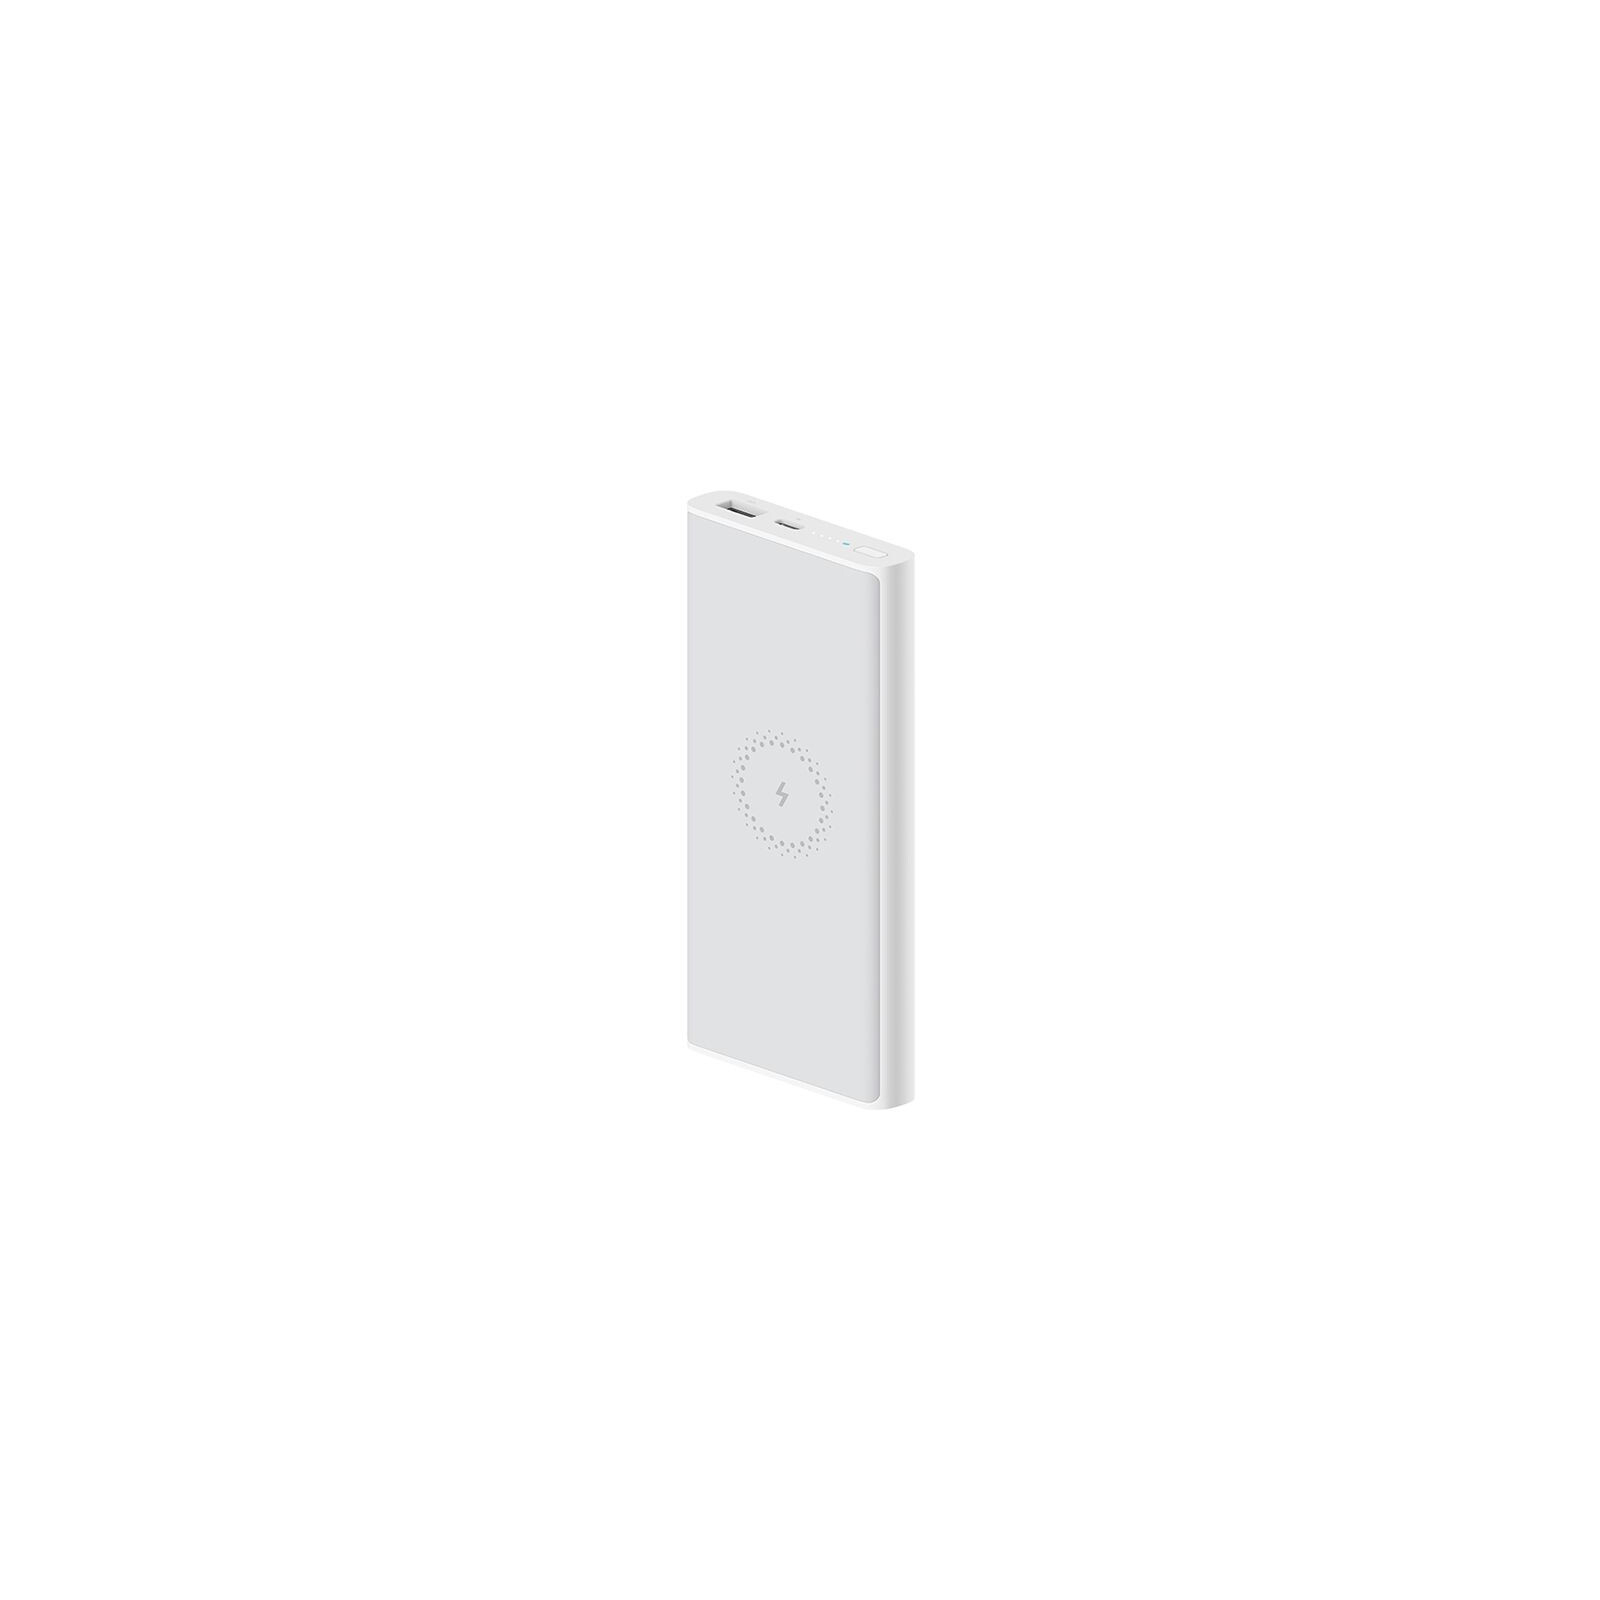 Батарея універсальна Xiaomi Mi Wireless Youth Edition 10000 mAh White (562530) зображення 2